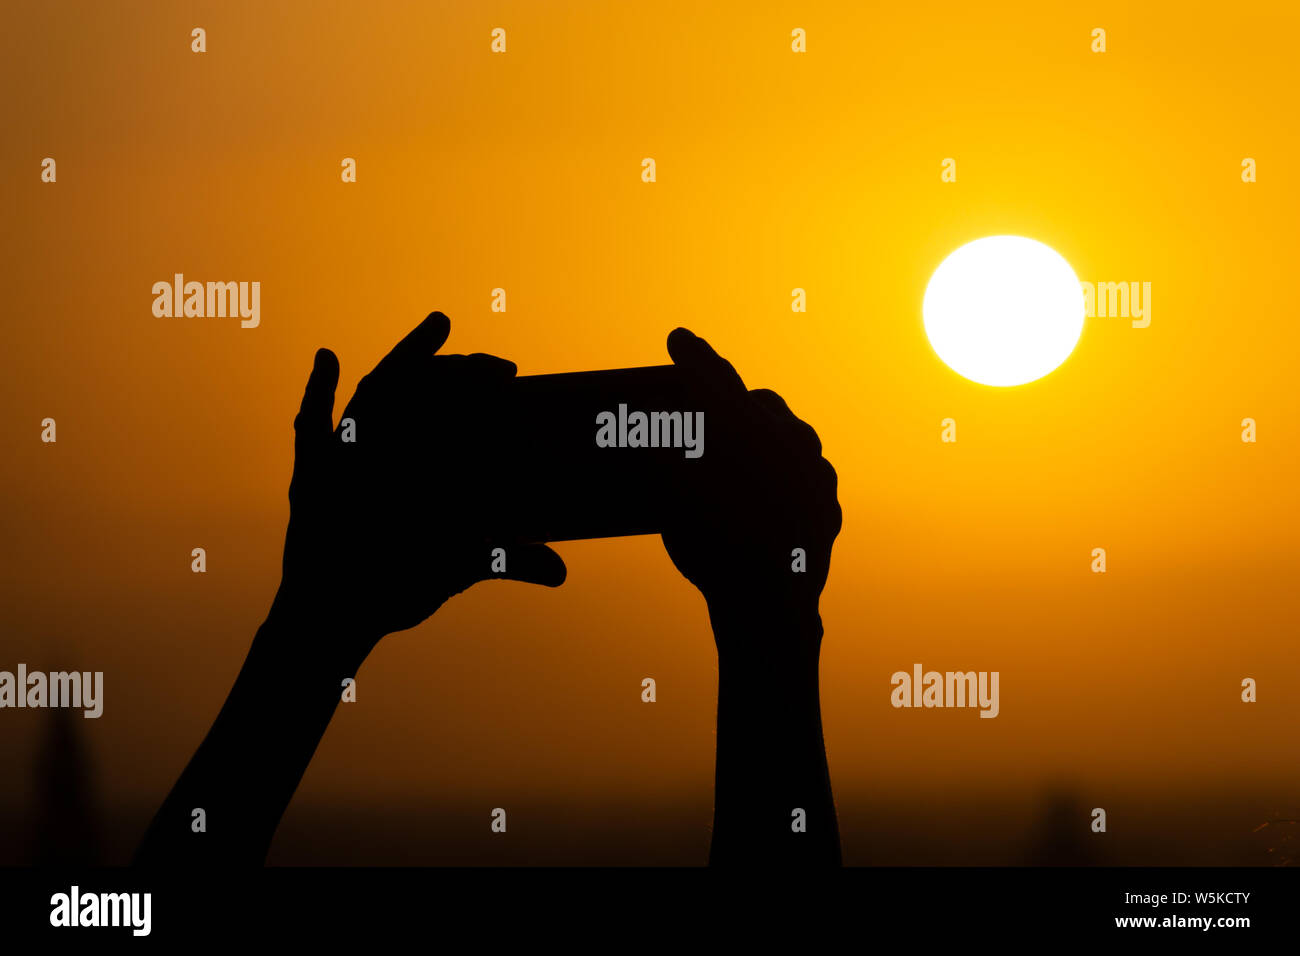 Silhouette der Hände halten ein Handy und die Fotografie des riesigen Sonne bei Sonnenuntergang oder Sunrise. Männliche macht ein Foto auf seinem Telefon Stockfoto